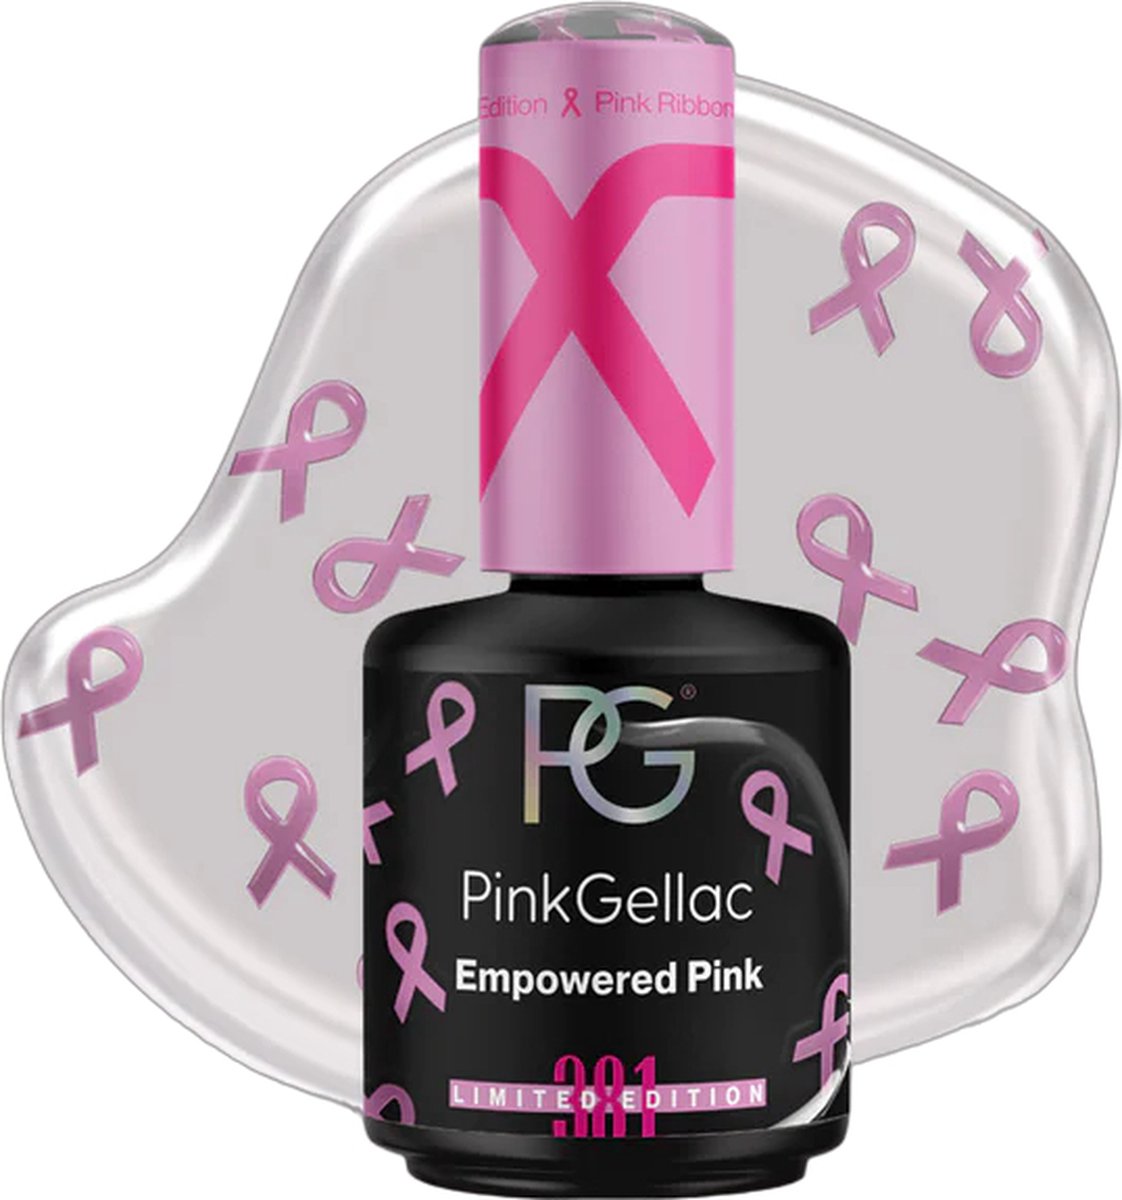 Pink Gellac Roze Gellak Nagellak Gelnagellak Gelnagels en Gel Nails 381 Empowered Pink